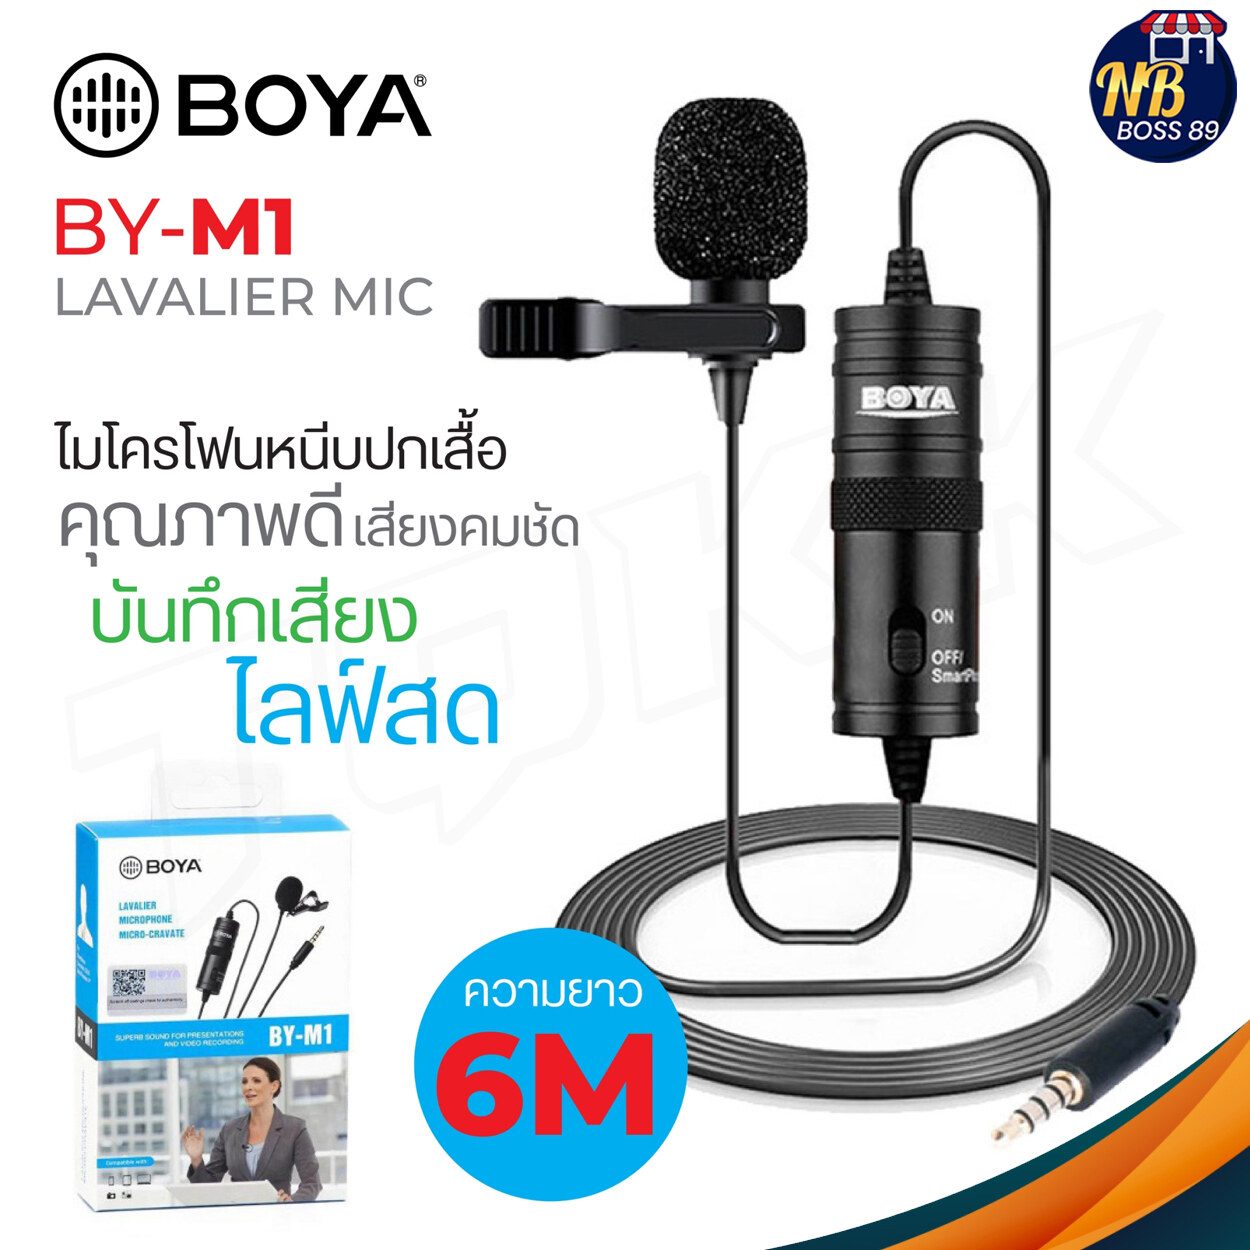 BOYA BY-M1 ของแท้ 100% Microphone ไมค์อัดเสียง ไมค์คุณภาพดี ไมค์ระดับมืออาชีพ ไมโครโฟน กล้อง มือถือ  สายยาว 6 เมตร (ไมค์ไลฟ์สด) NBboss89